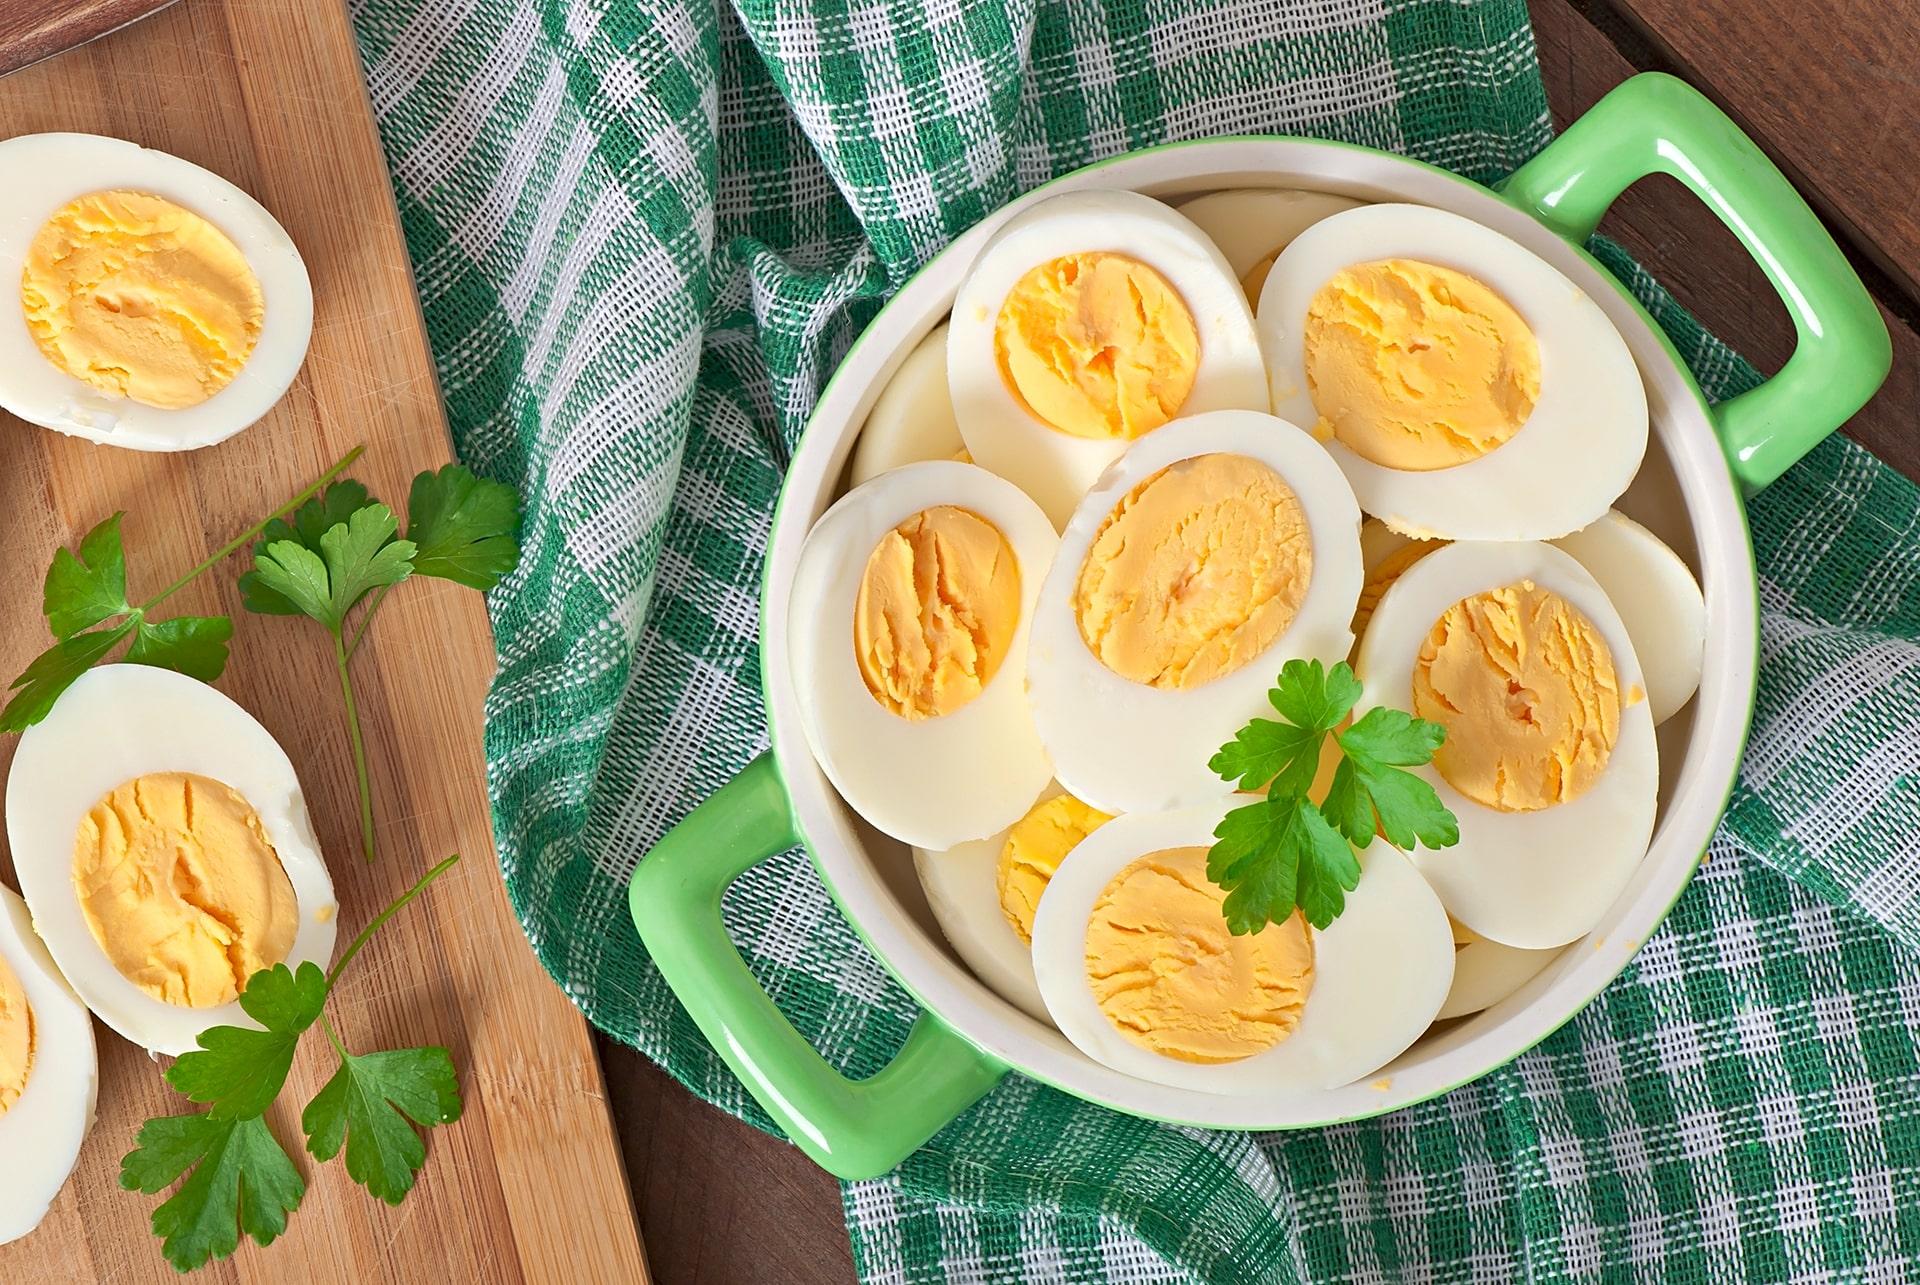 तुमचा आहार ‘अंडी’ उत्कृष्ट बनवा: अंड्यातील महत्त्वाच्या पौष्टिक तथ्ये लक्षात ठेवा!